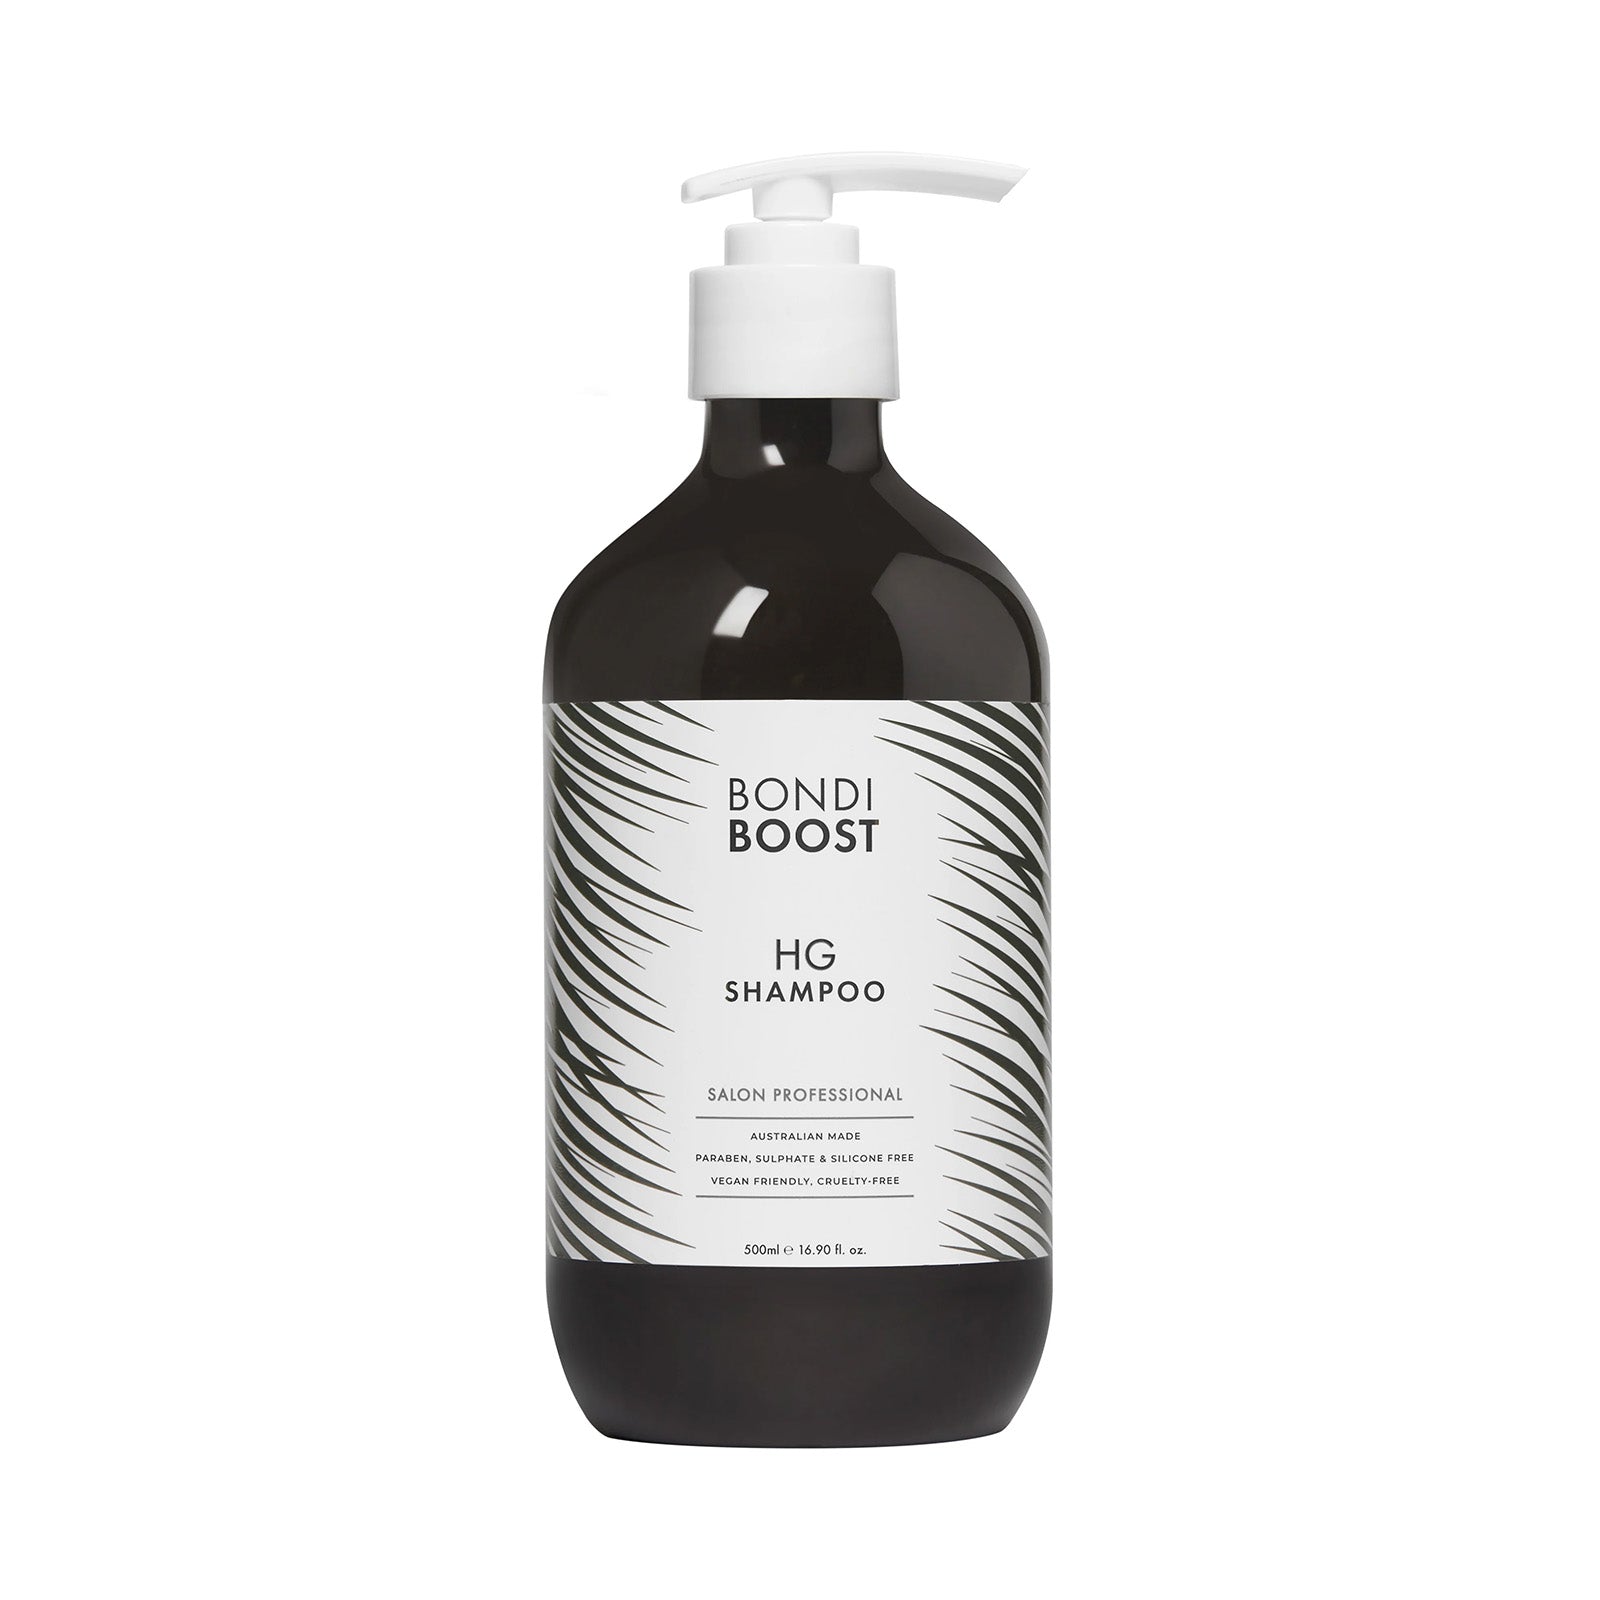 BONDI BOOST Hair Growth Shampoo 300ML